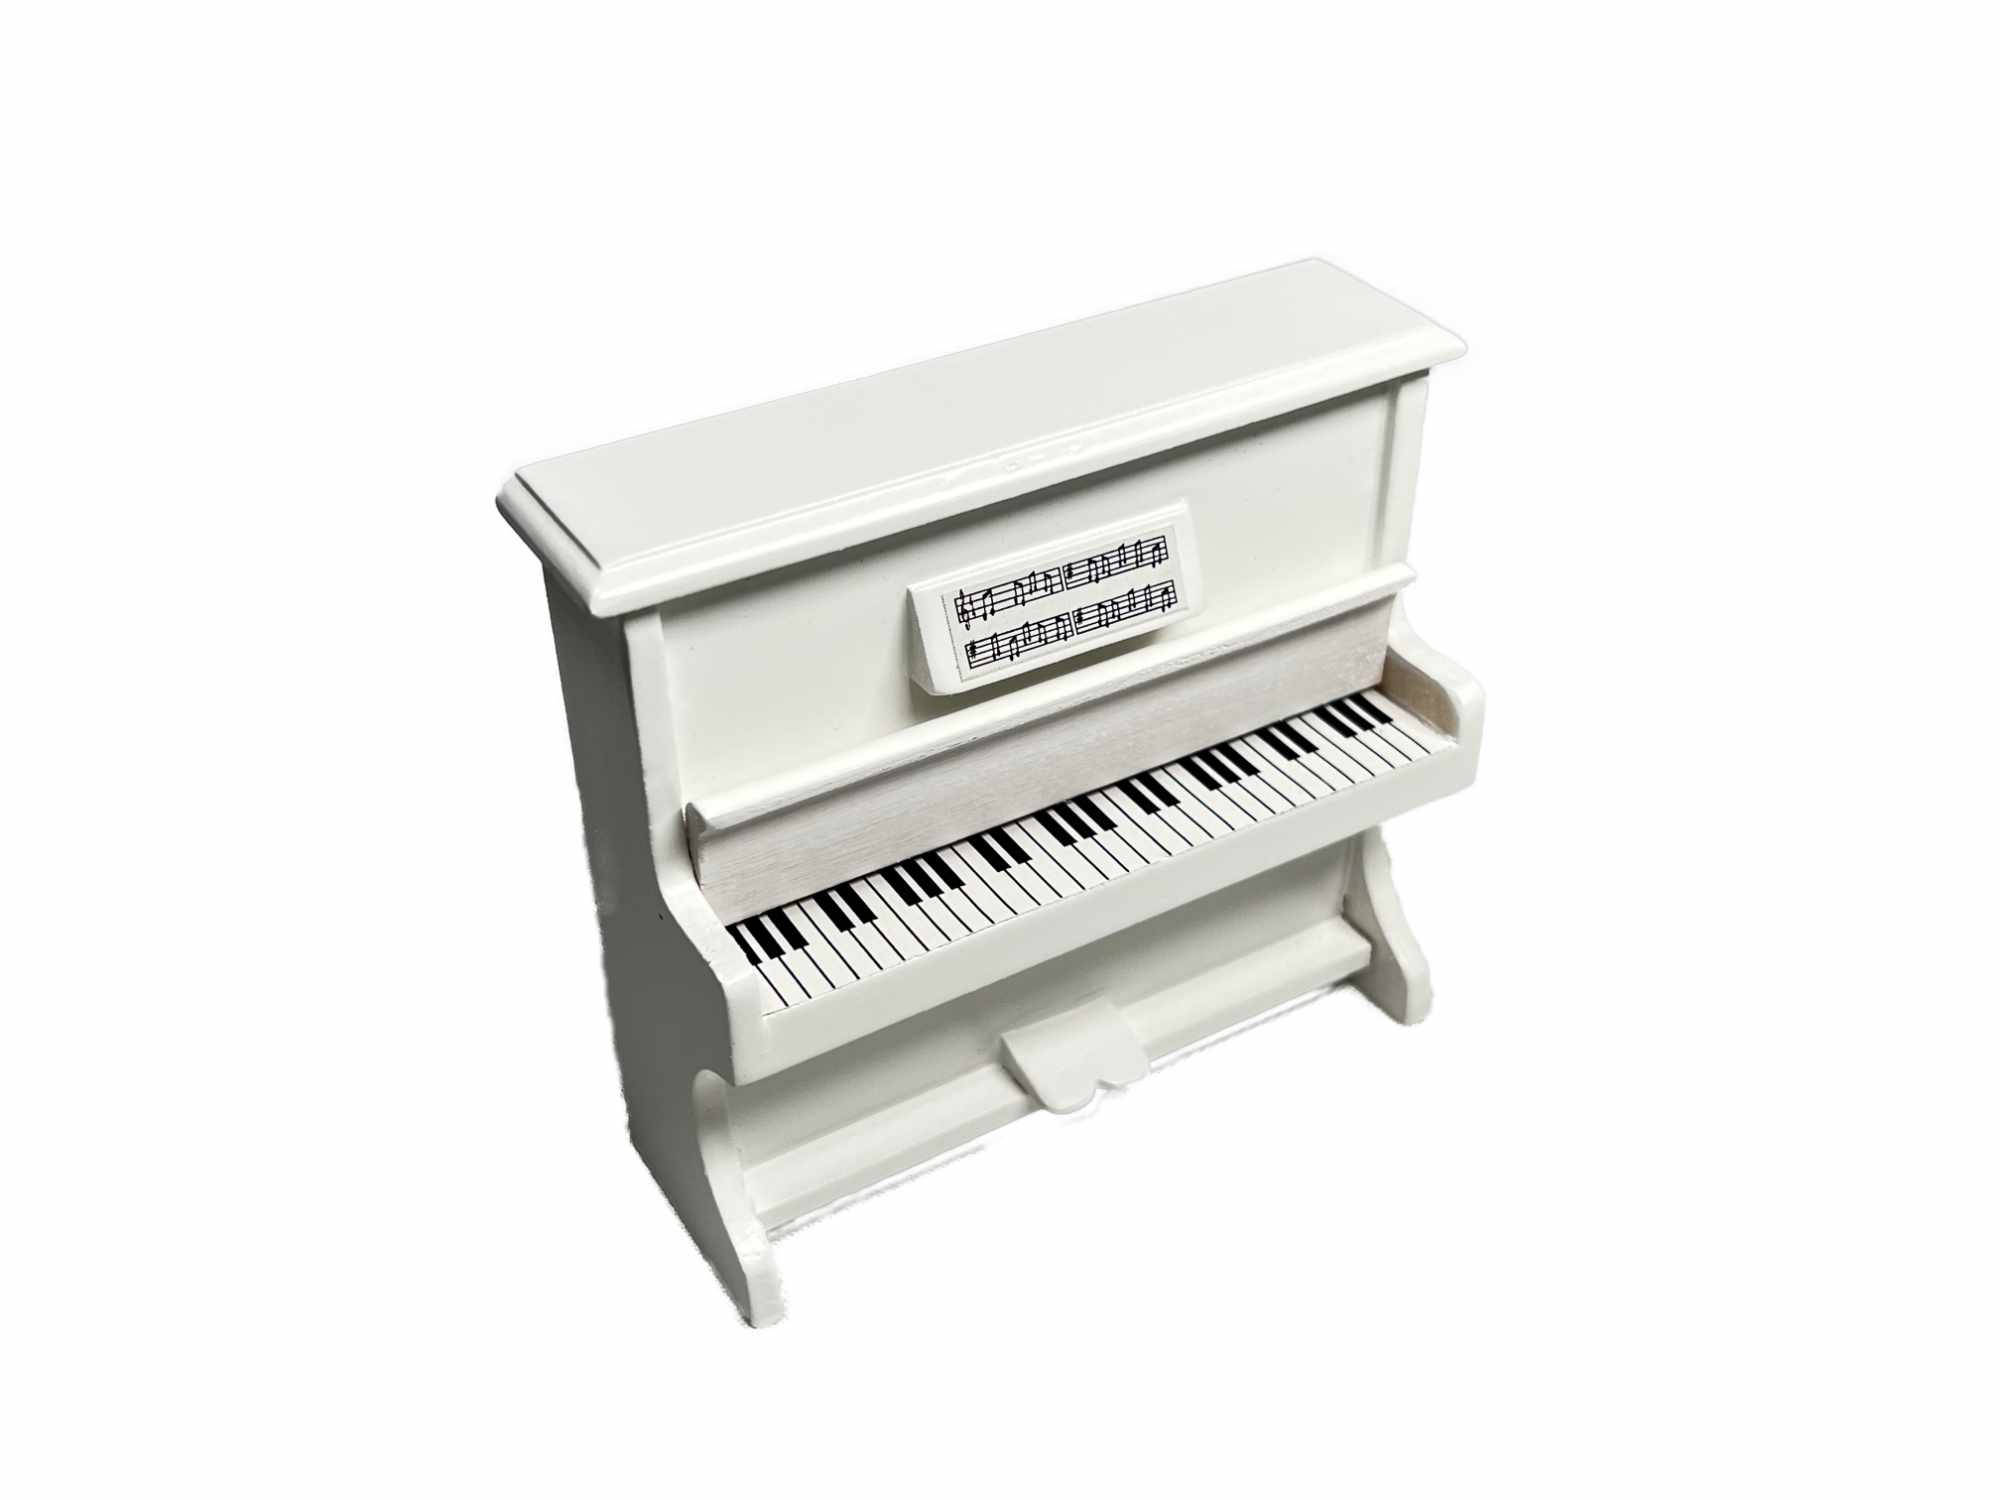 Piano Weiß mit offner Tastatur